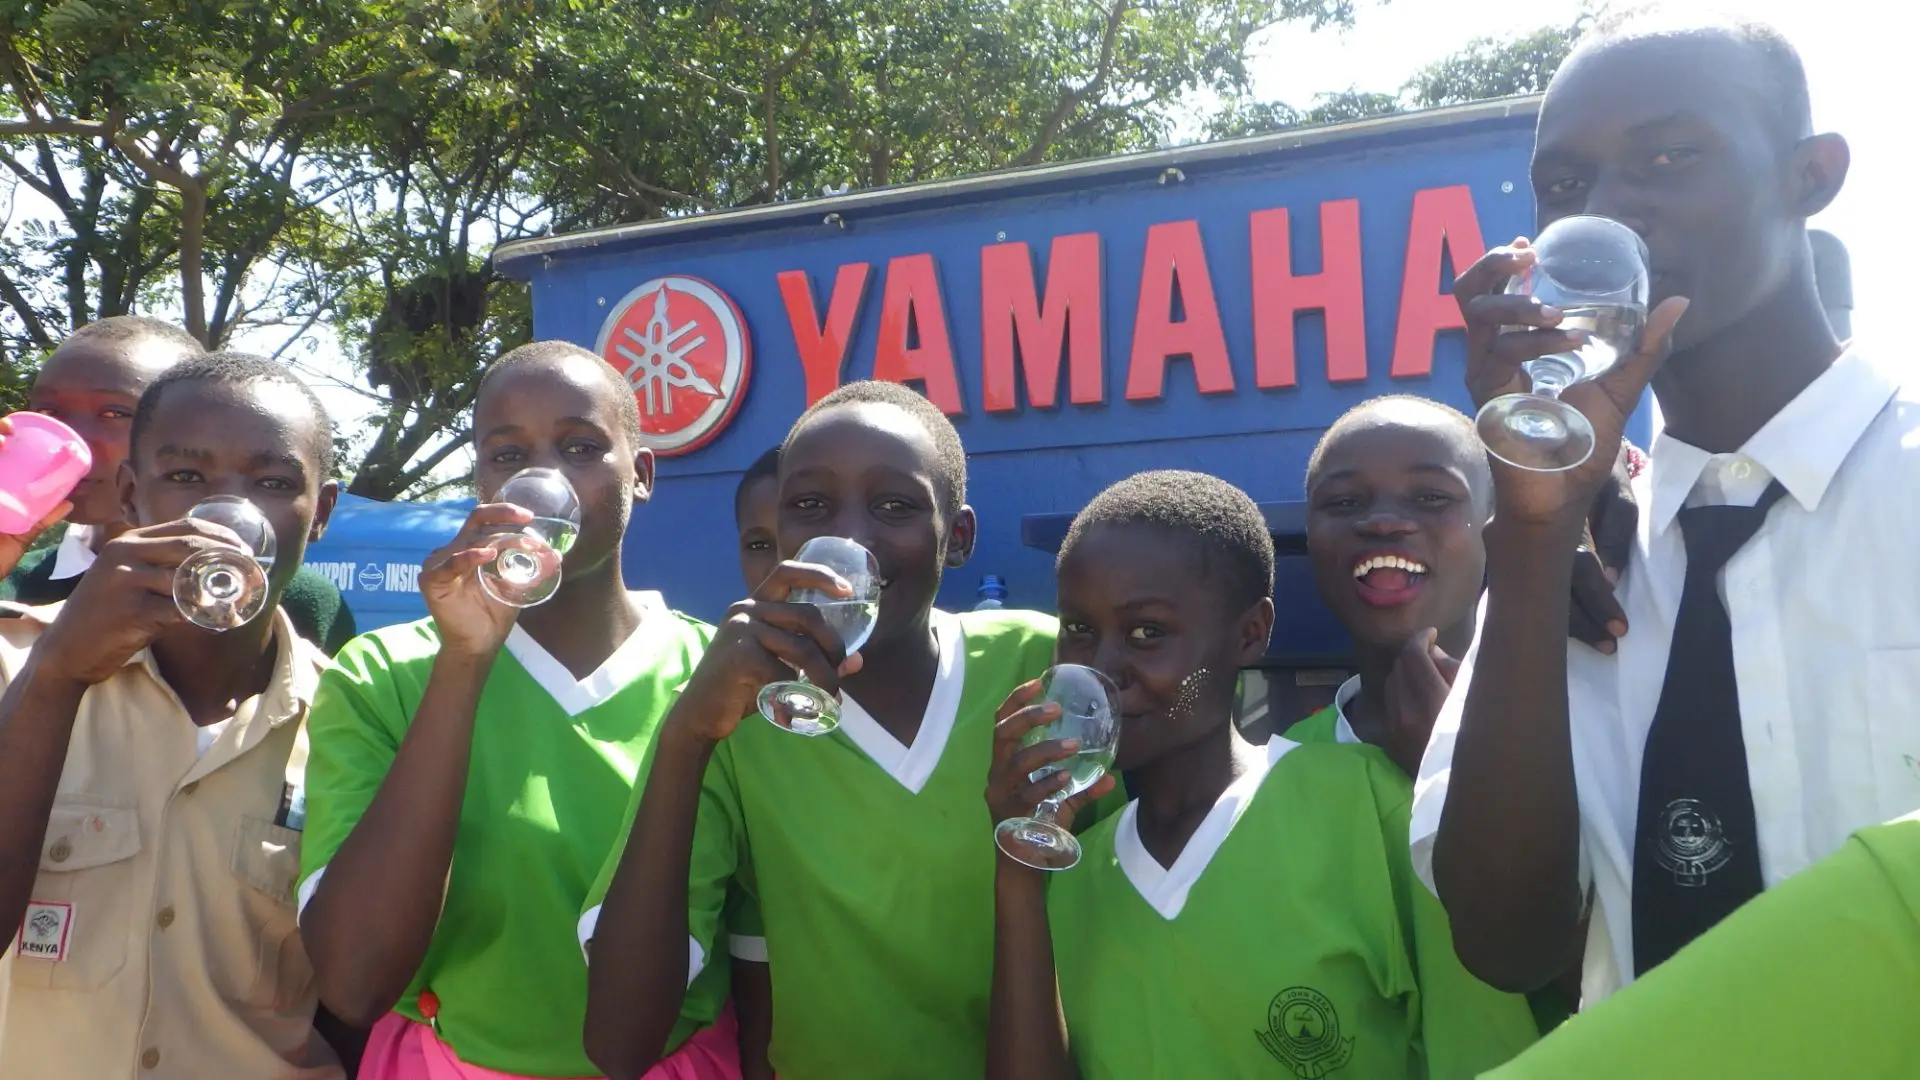 een-waterzuiveringssysteem-van-yamaha-motor-kondigt-nieuw-leven-aan-voor-mensen-in-opkomende-markten_d